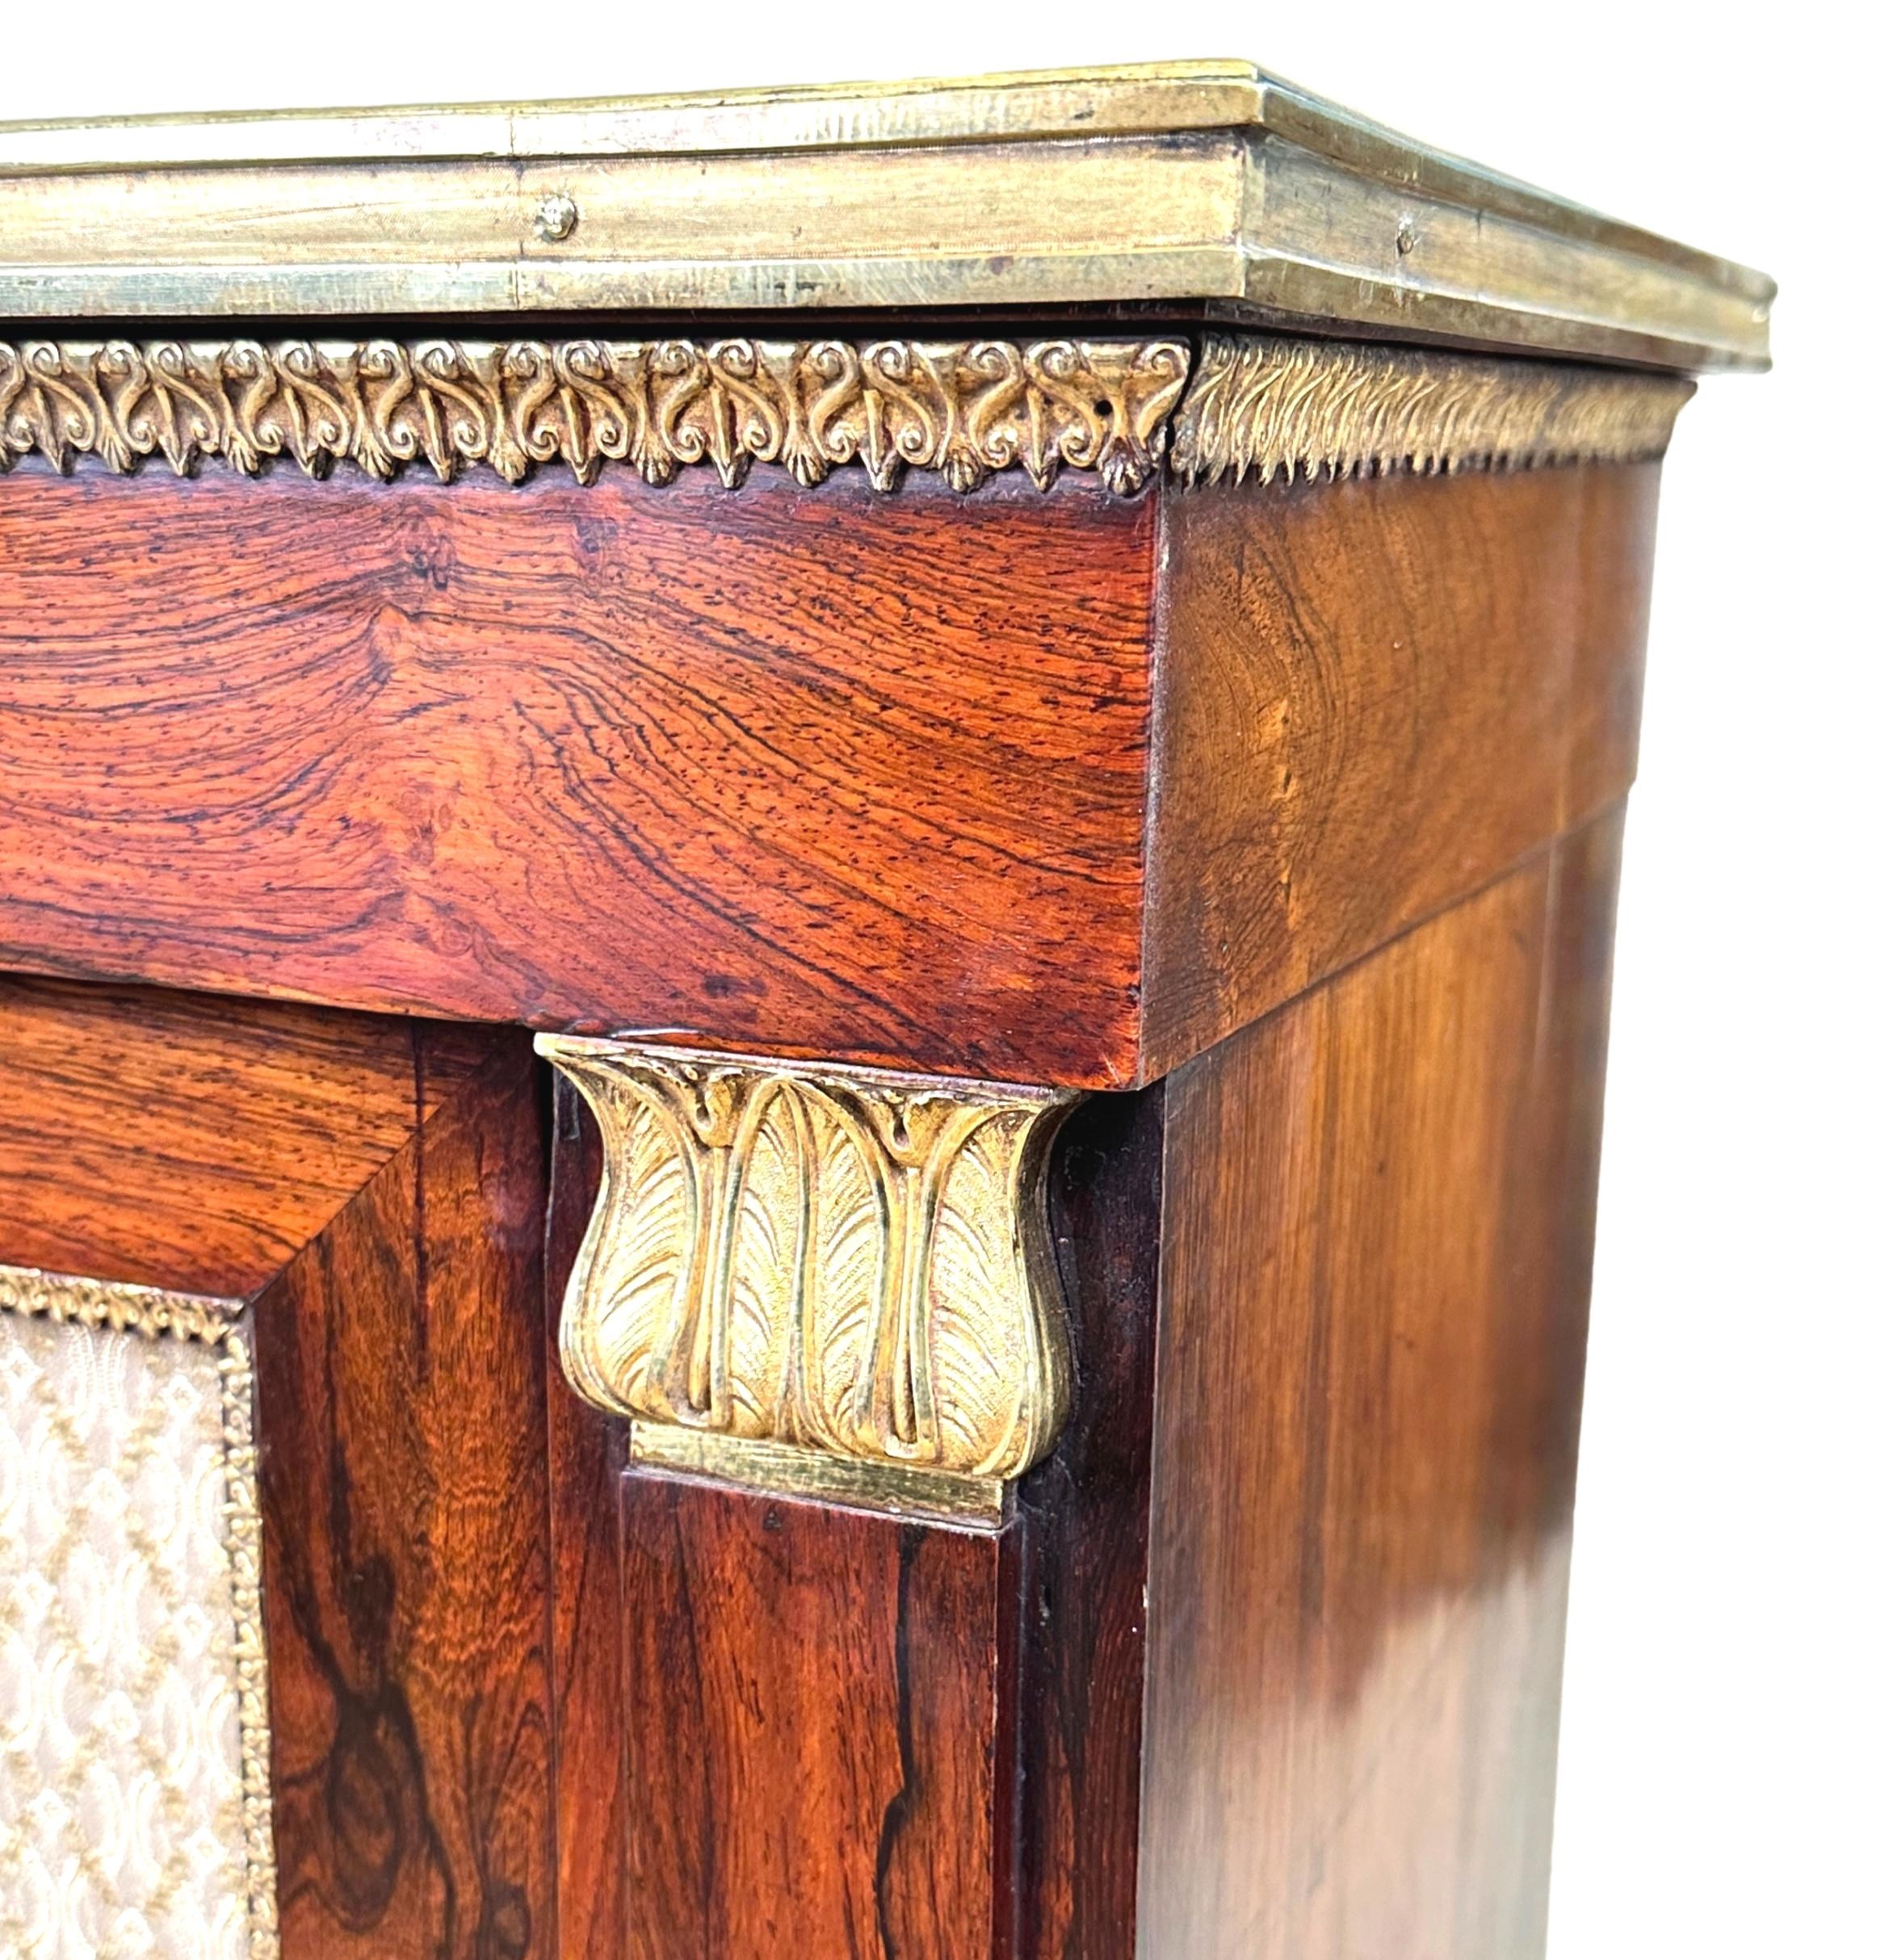 Un meuble d'appoint en bois de rose de la période Regency, 19e siècle, de très bonne qualité et de forme rectangulaire. Le plateau bien structuré est orné d'une moulure en laiton attrayante sur le bord, au-dessus de deux portes à panneaux rembourrés